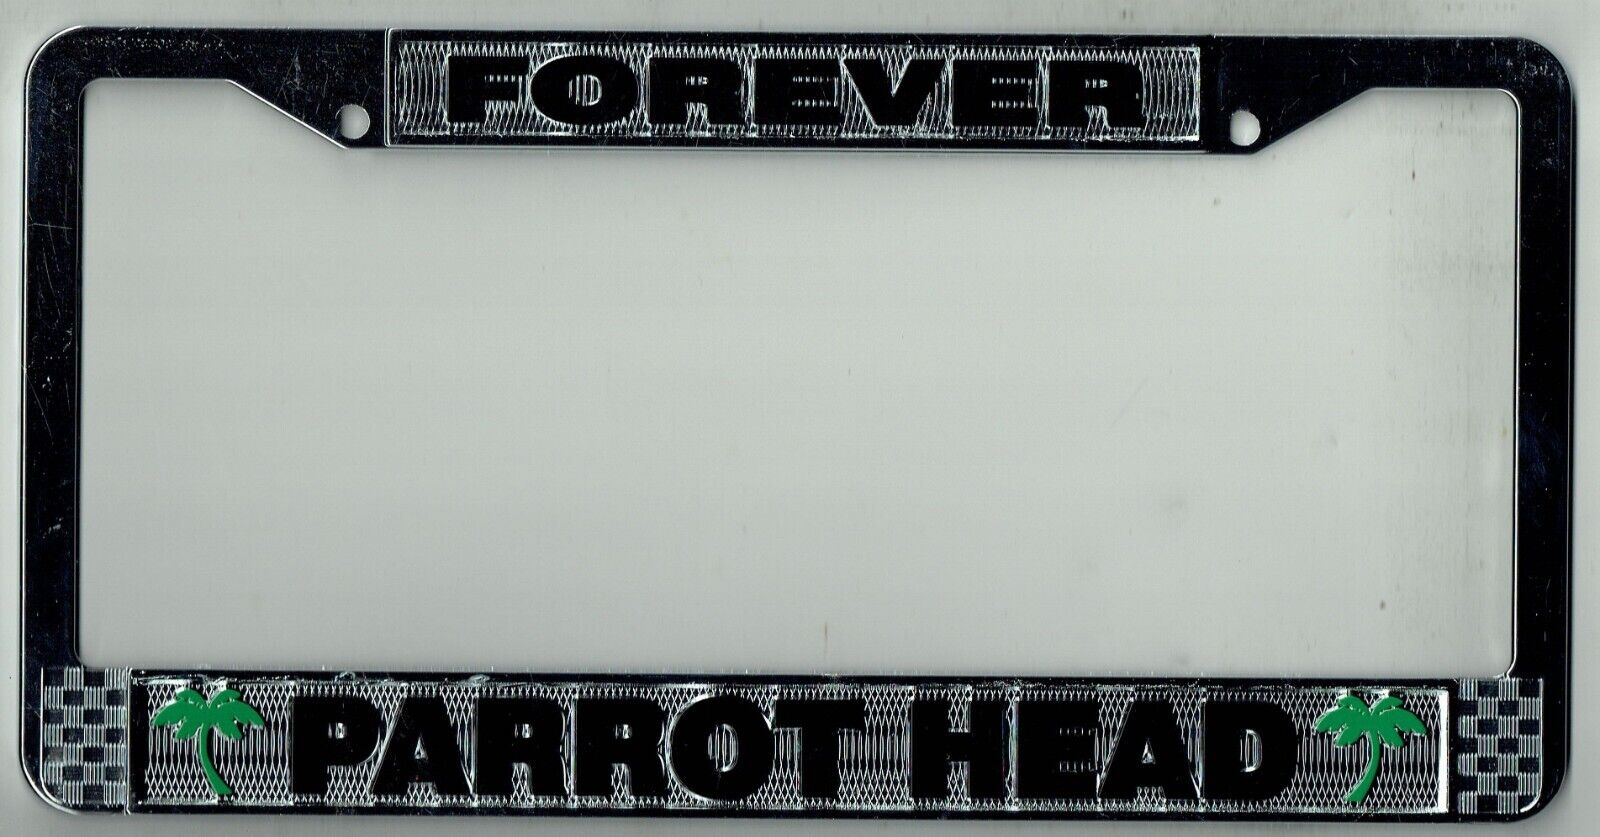 FOREVER Parrot Head Jimmy Buffett Margaritaville Vintage License Plate Frame HTF